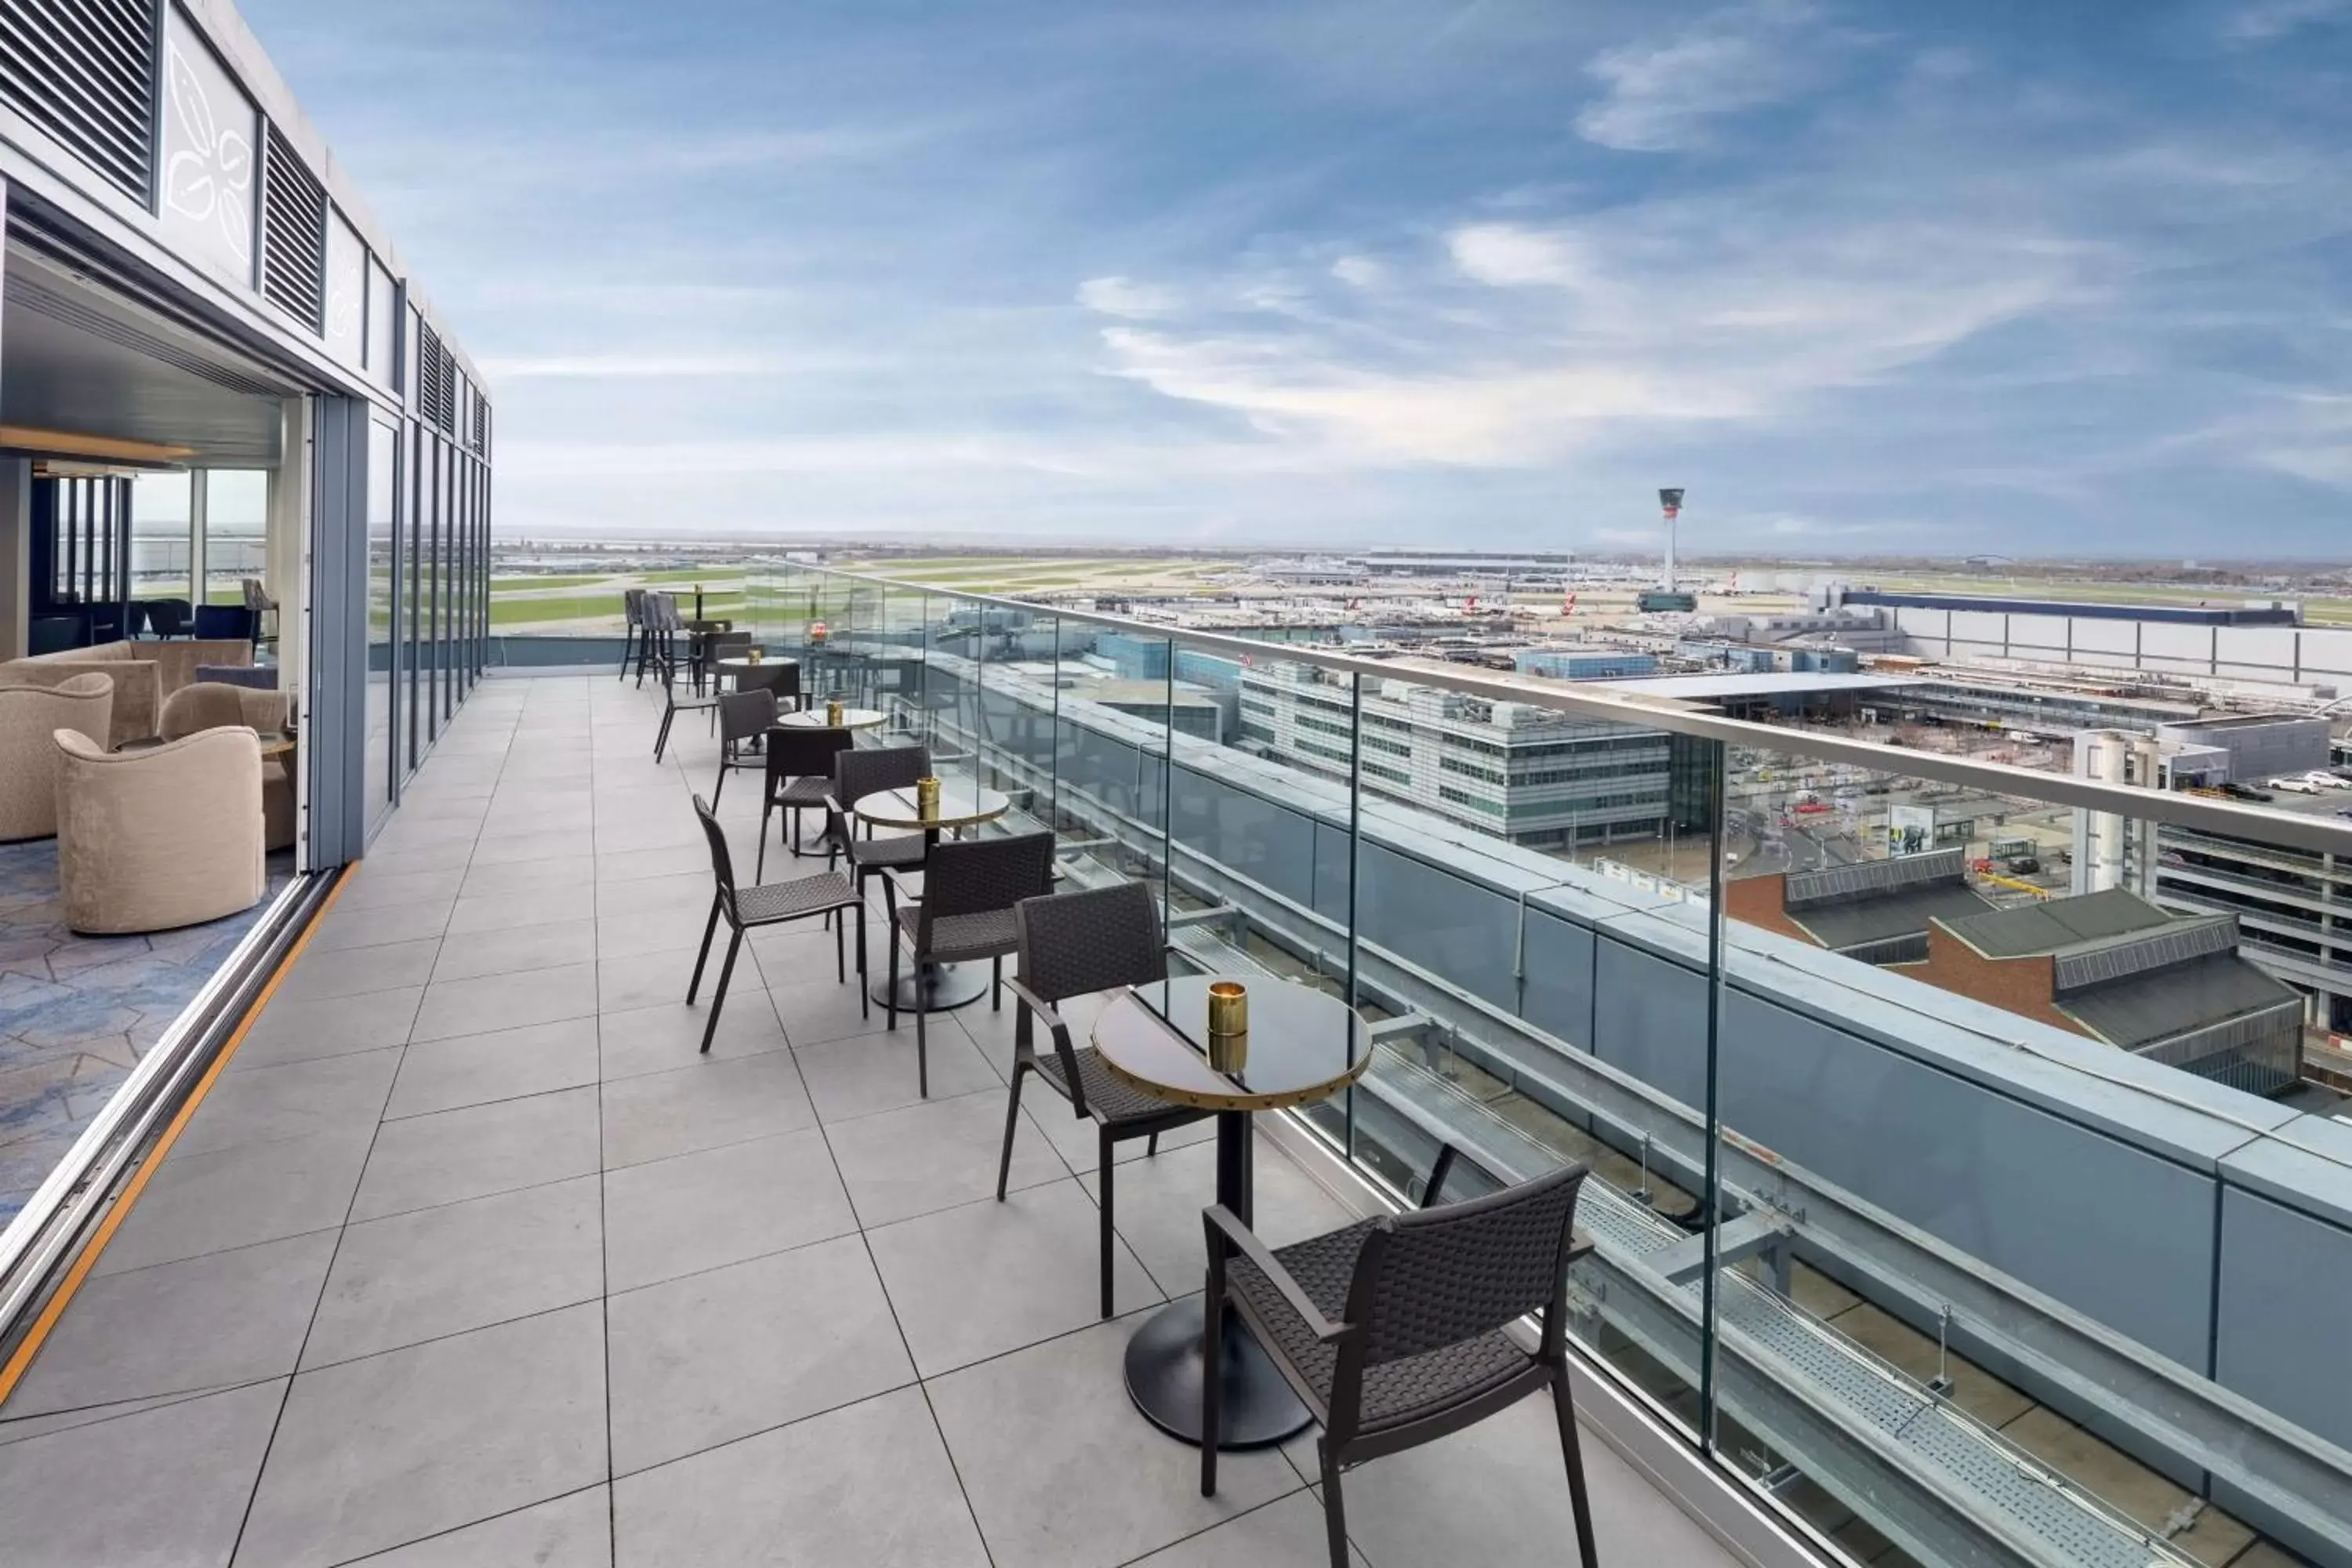 Lounge or bar, Balcony/Terrace in Hilton Garden Inn London Heathrow Terminal 2 and 3